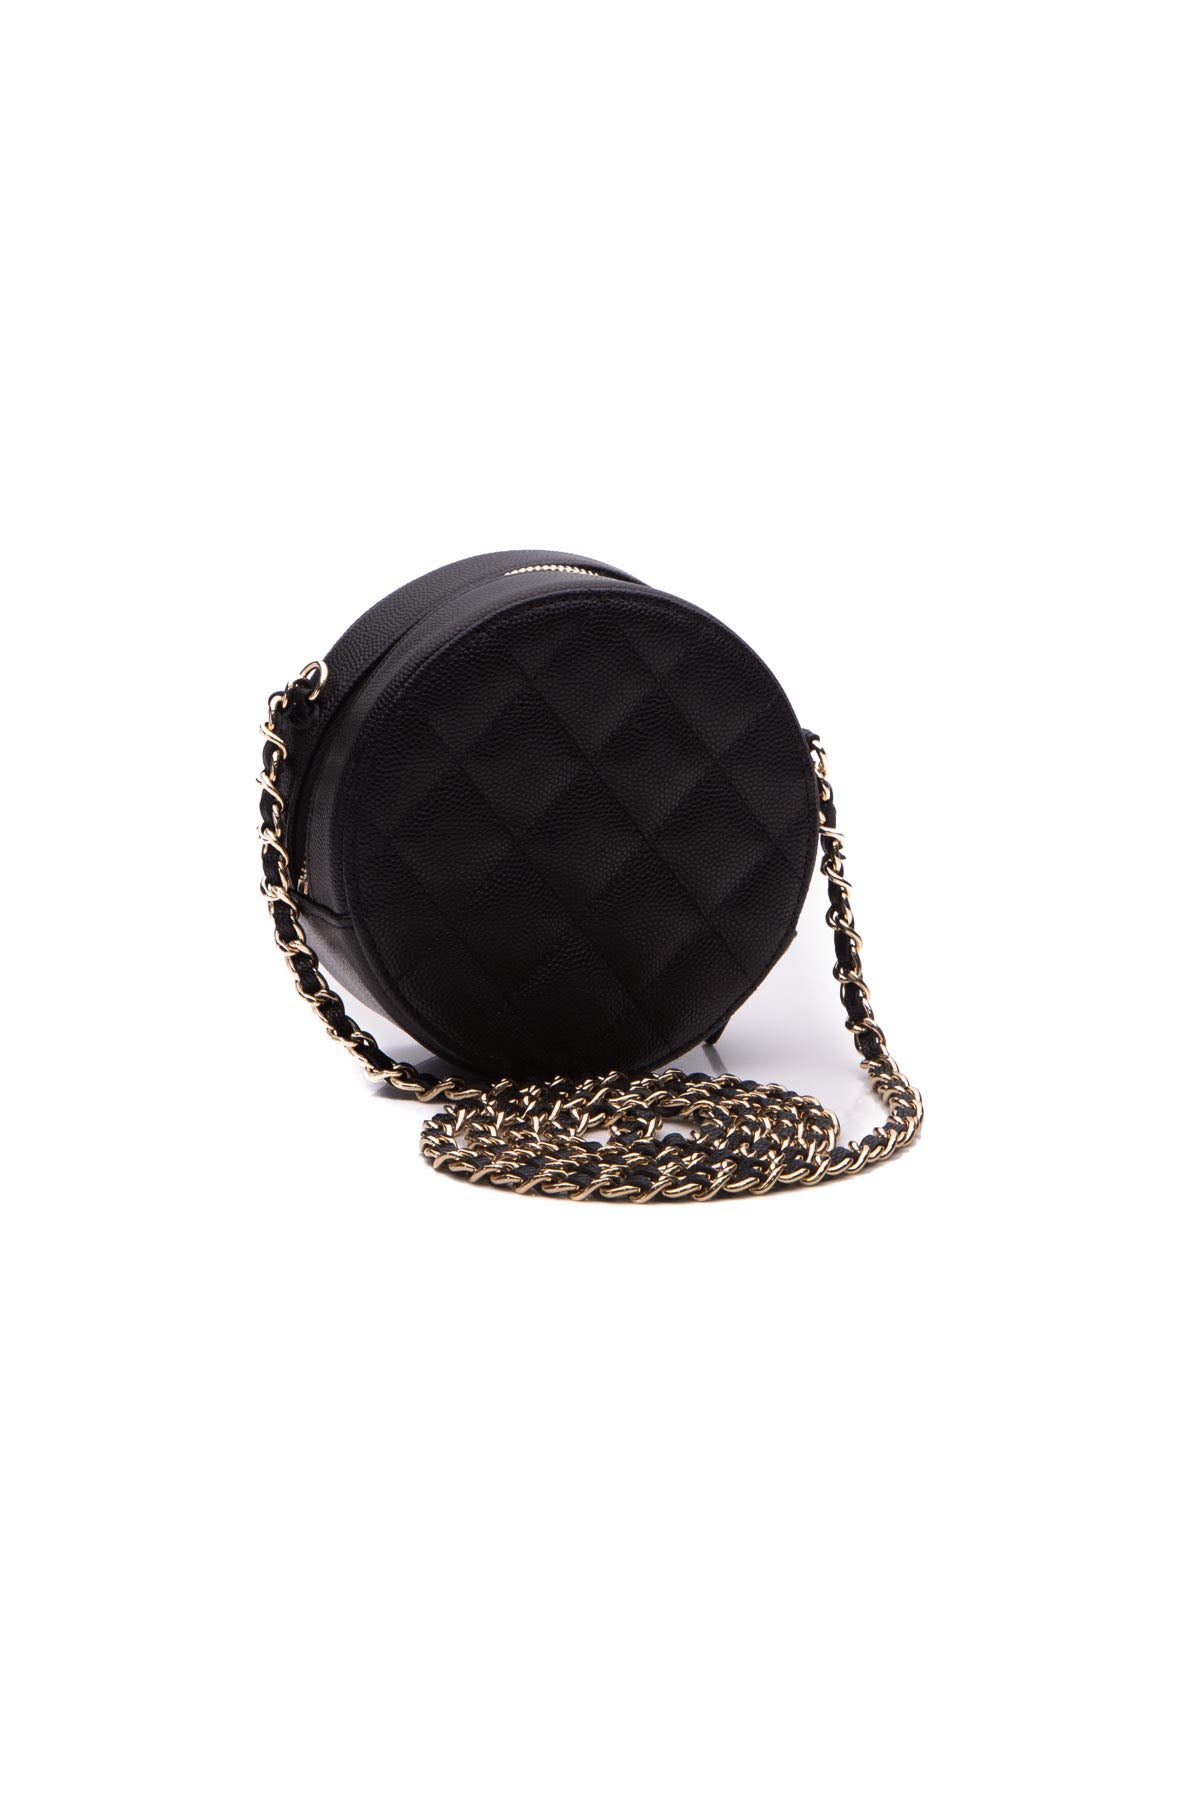 Chanel Round Classic Chain Mini Bag - Couture USA